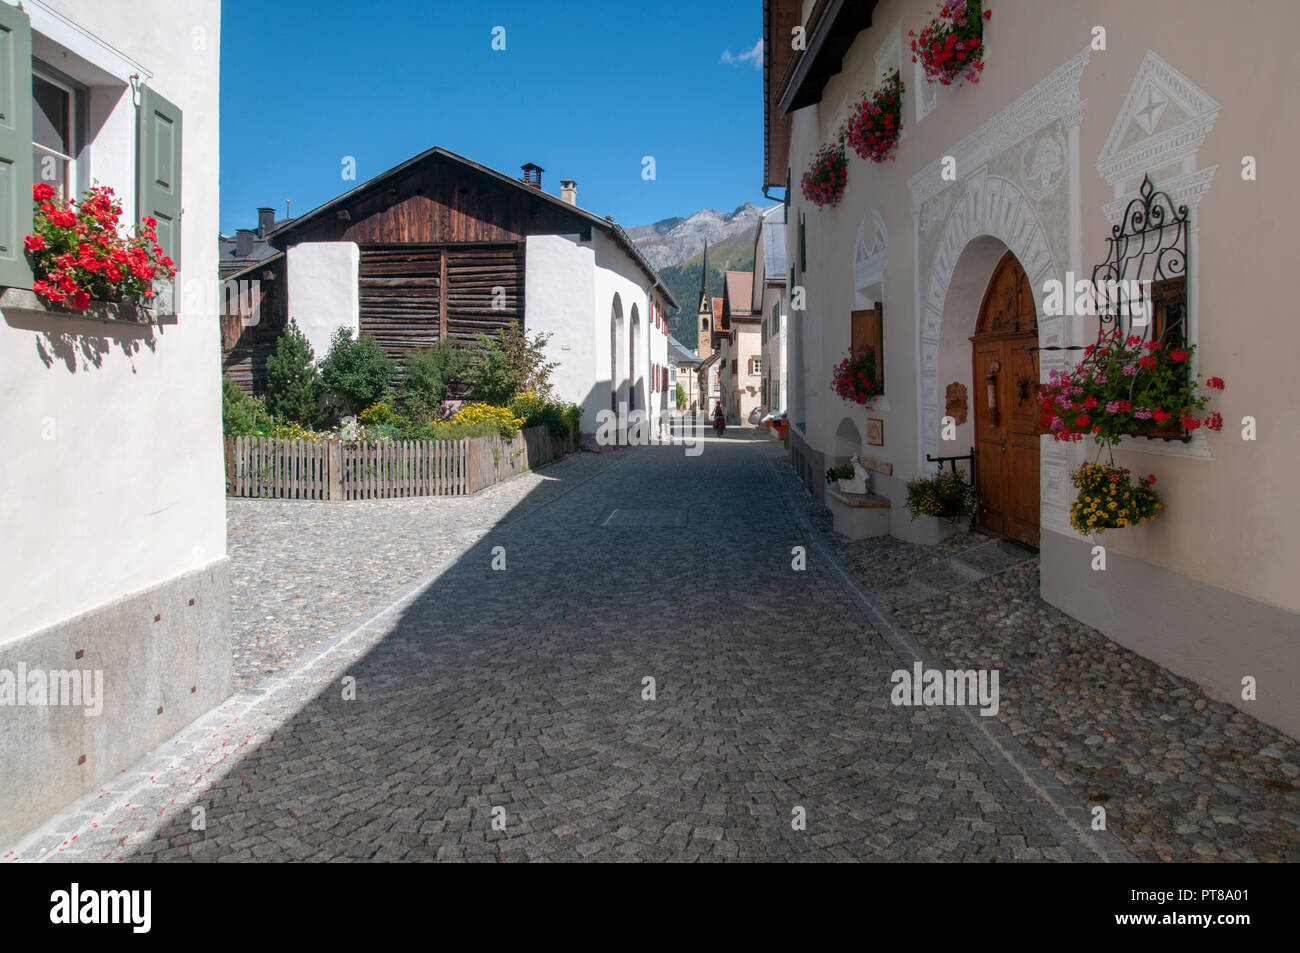 S-chanf è un comune della regione di Maloja nel cantone svizzero dei Grigioni. nella valle dell'Inn Foto Stock